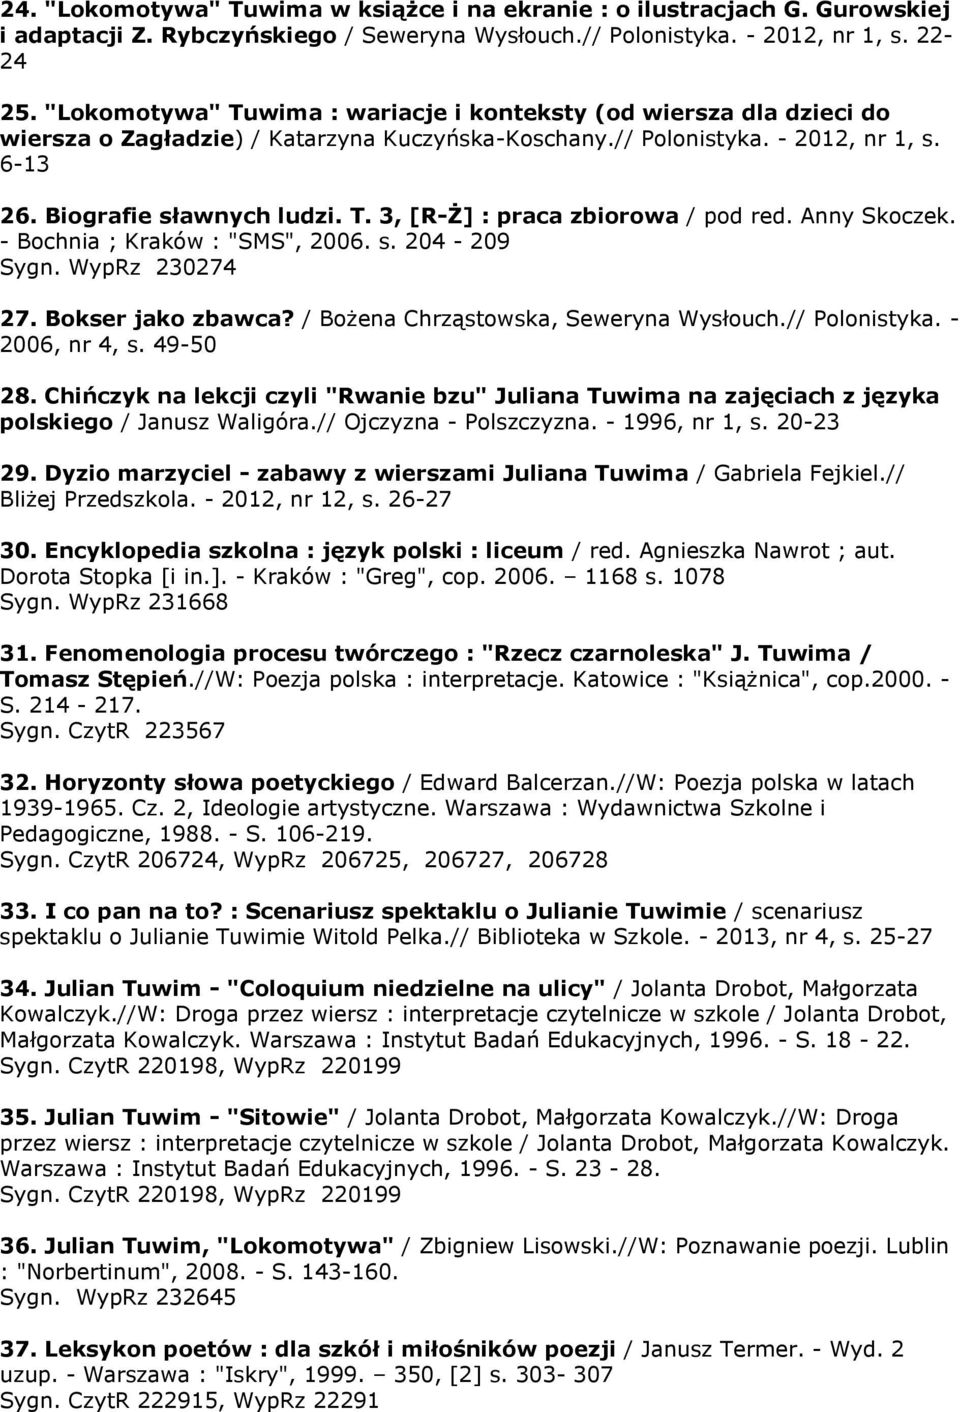 Anny Skoczek. - Bochnia ; Kraków : "SMS", 2006. s. 204-209 Sygn. WypRz 230274 27. Bokser jako zbawca? / Bożena Chrząstowska, Seweryna Wysłouch.// Polonistyka. - 2006, nr 4, s. 49-50 28.